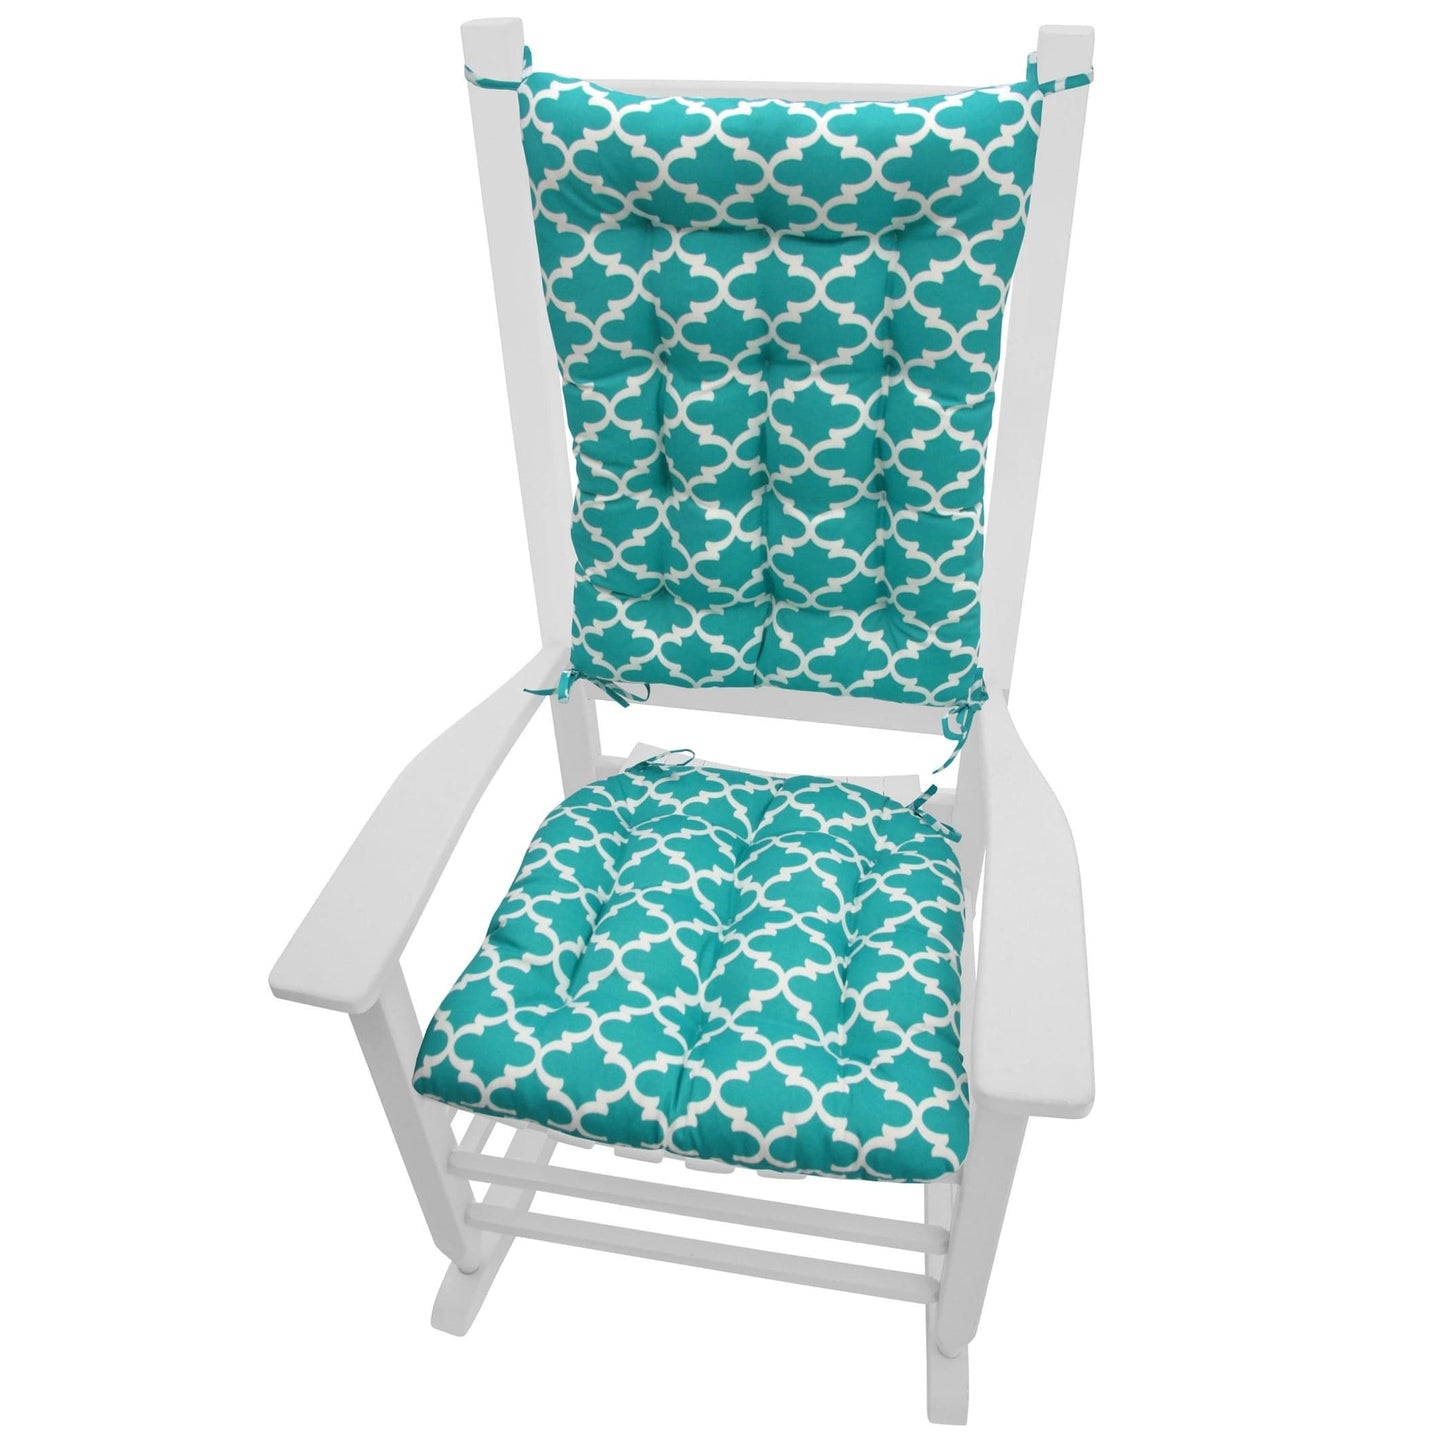 Fulton Aqua Indoor/Outdoor Rocking Chair Cushions - Barnett Home Decor - Aqua - Teal Green - Marine